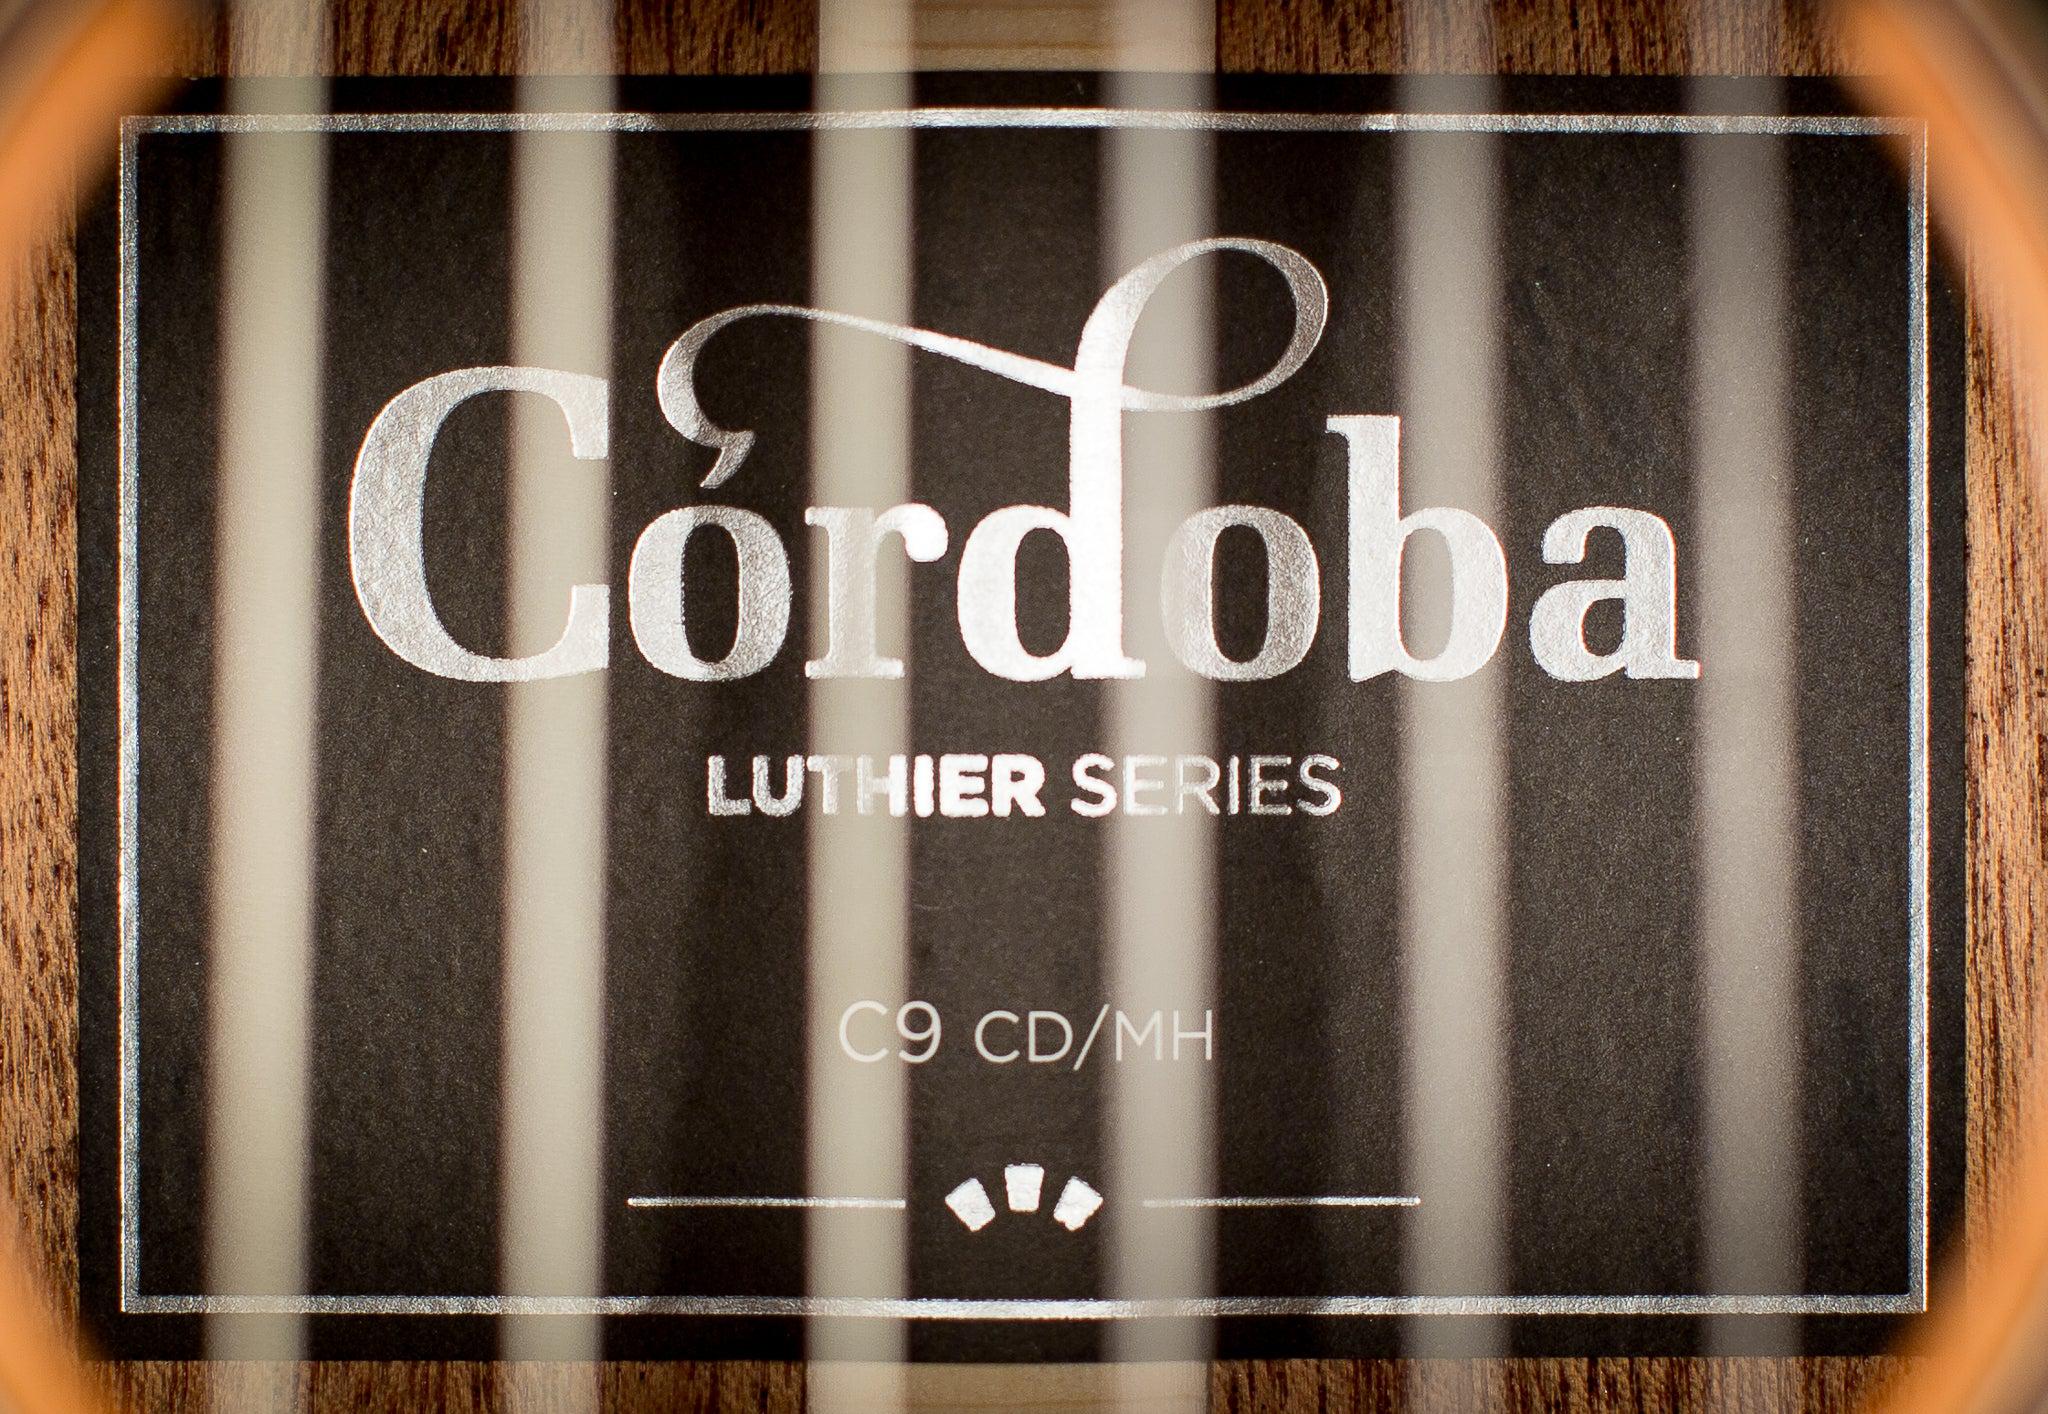 Cordoba C9 Parlor Classical Guitar